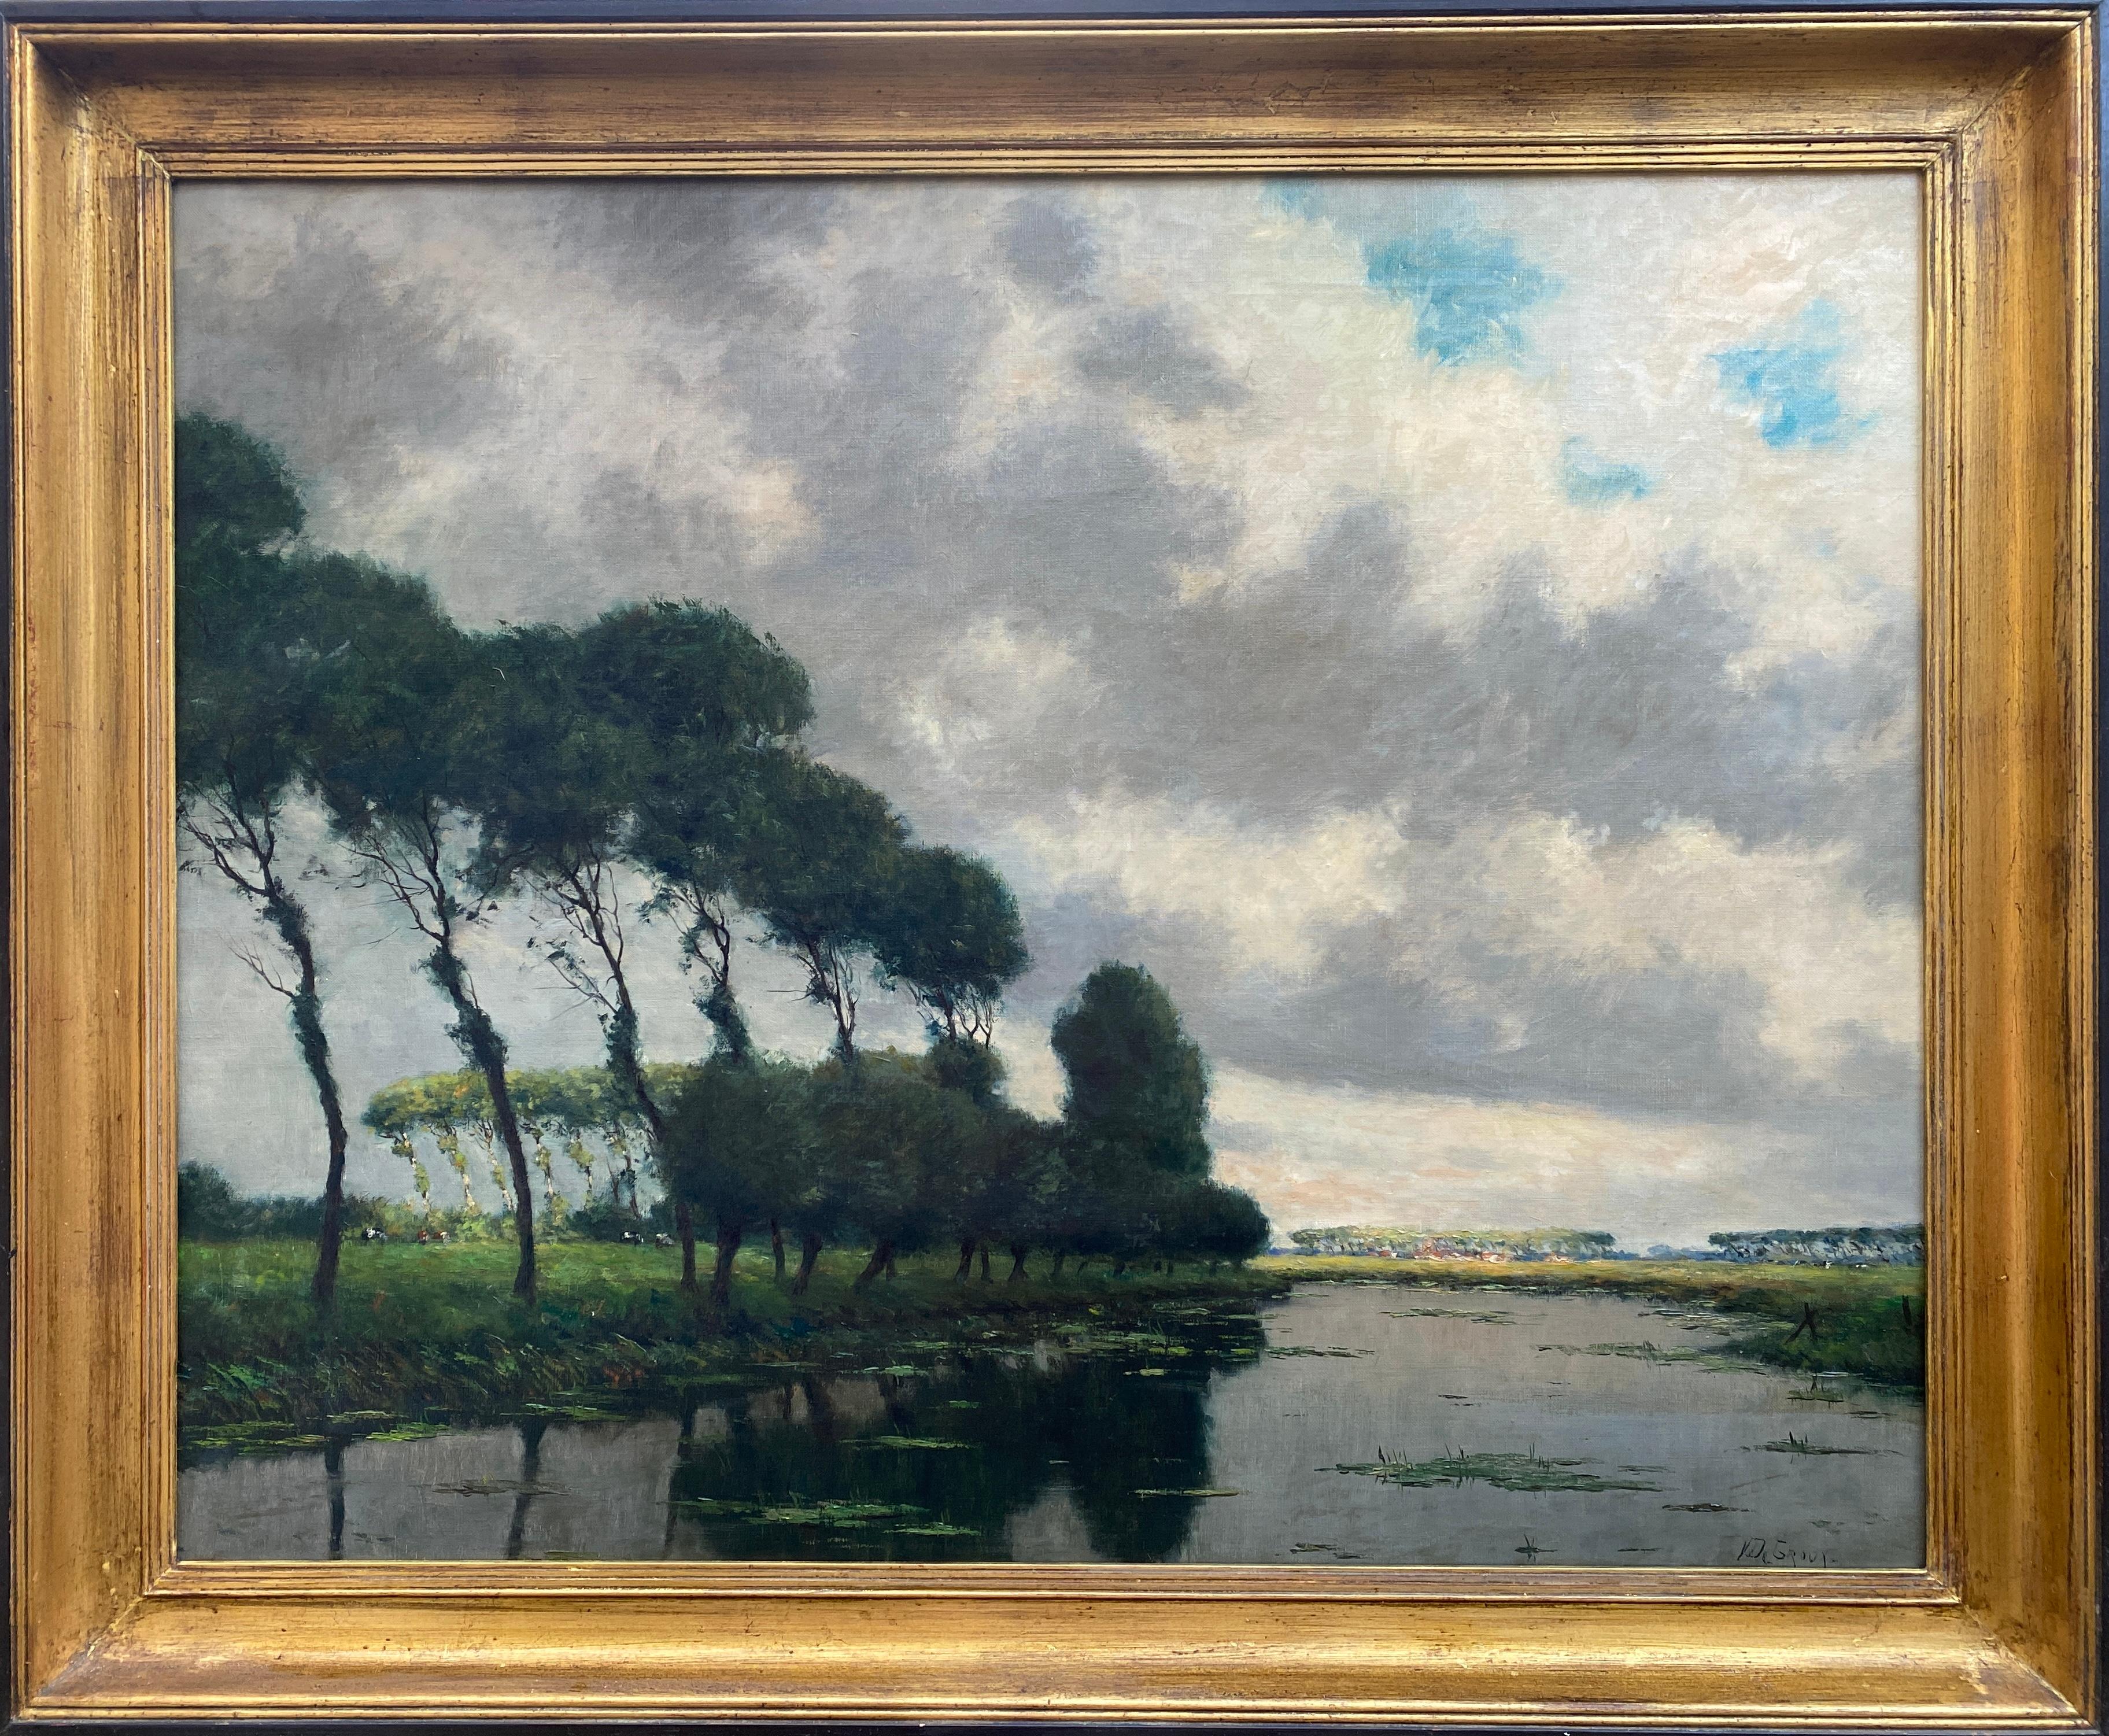 Victor De Groux, Brussels 1895 – 1975, Belgian Painter, Landscape at the River